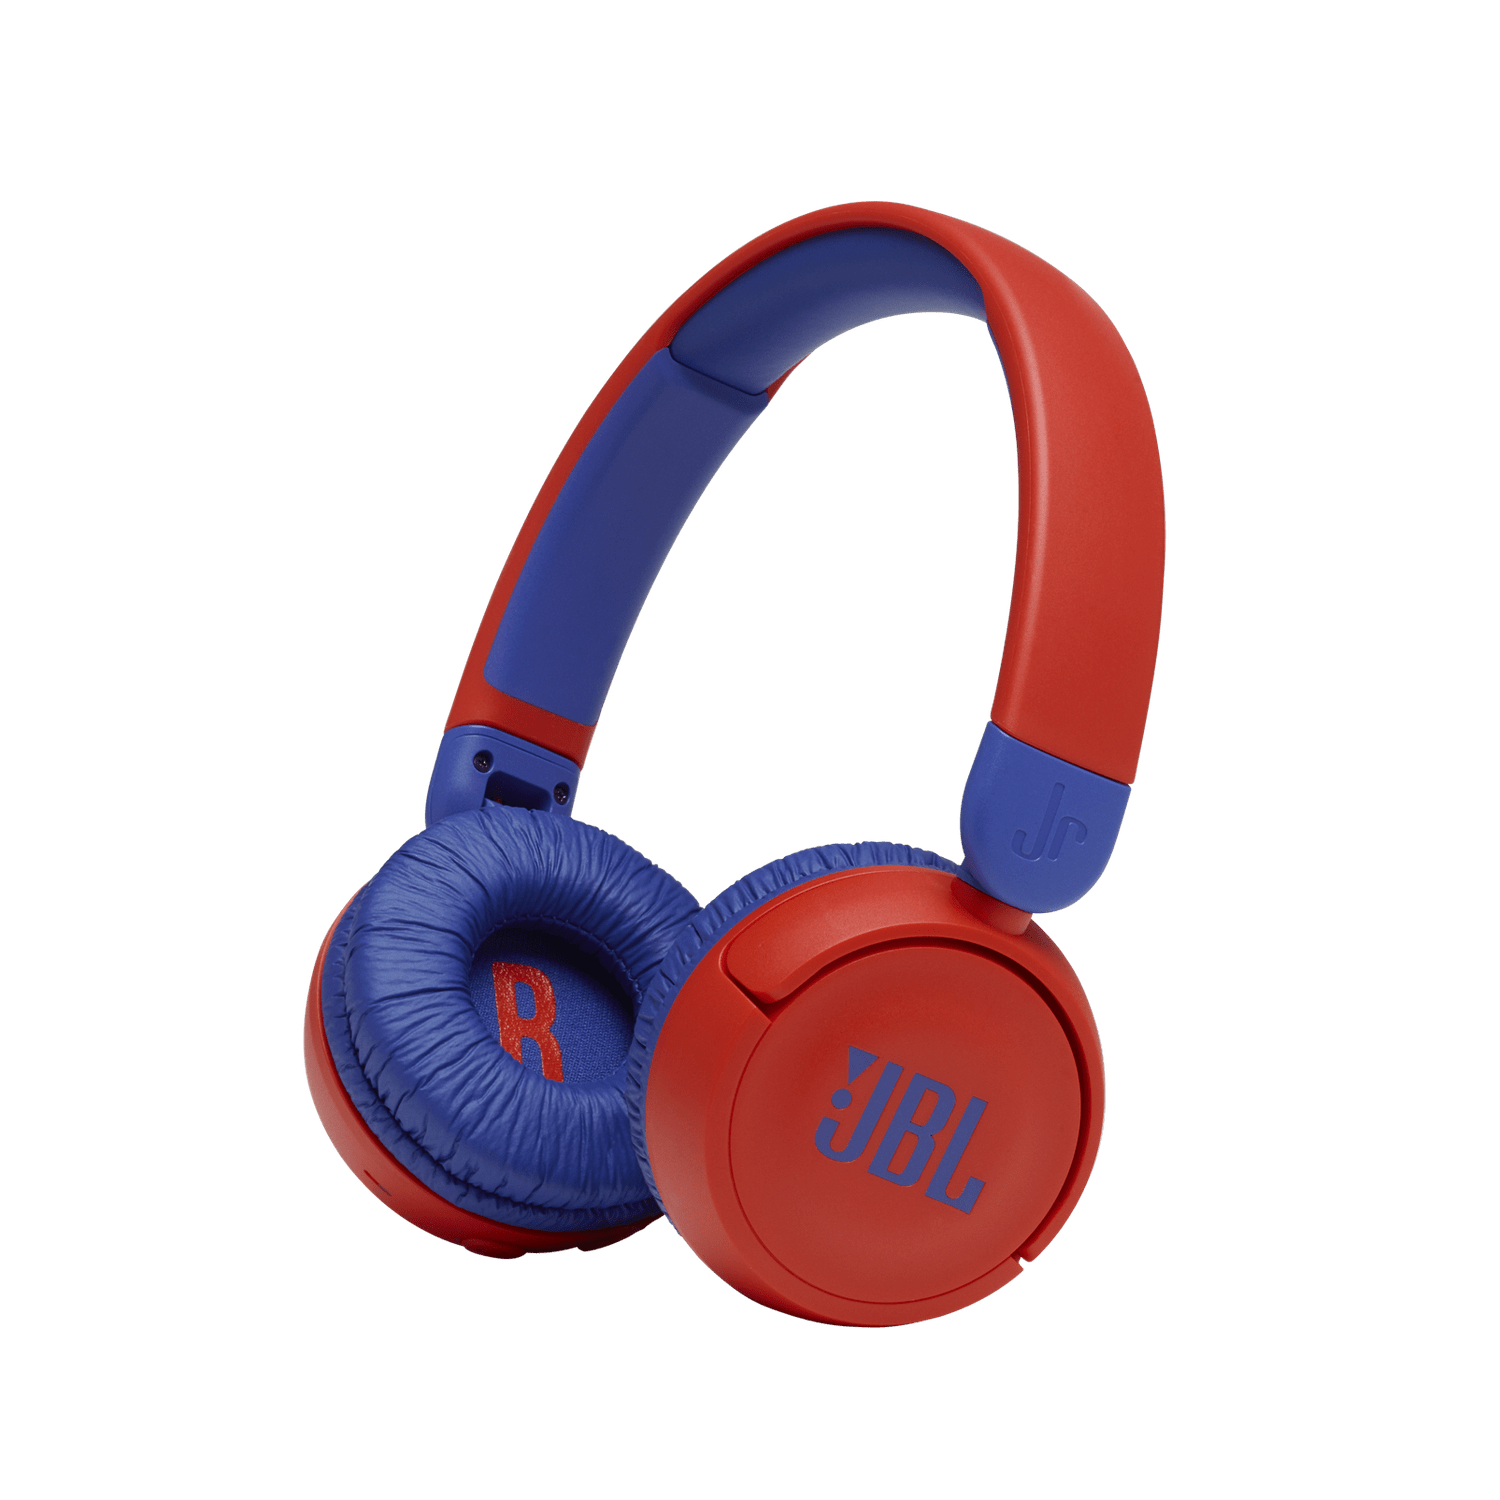 fone de ouvido jbl bluetooth infantil jr 310 bt vermelho com azul 1707